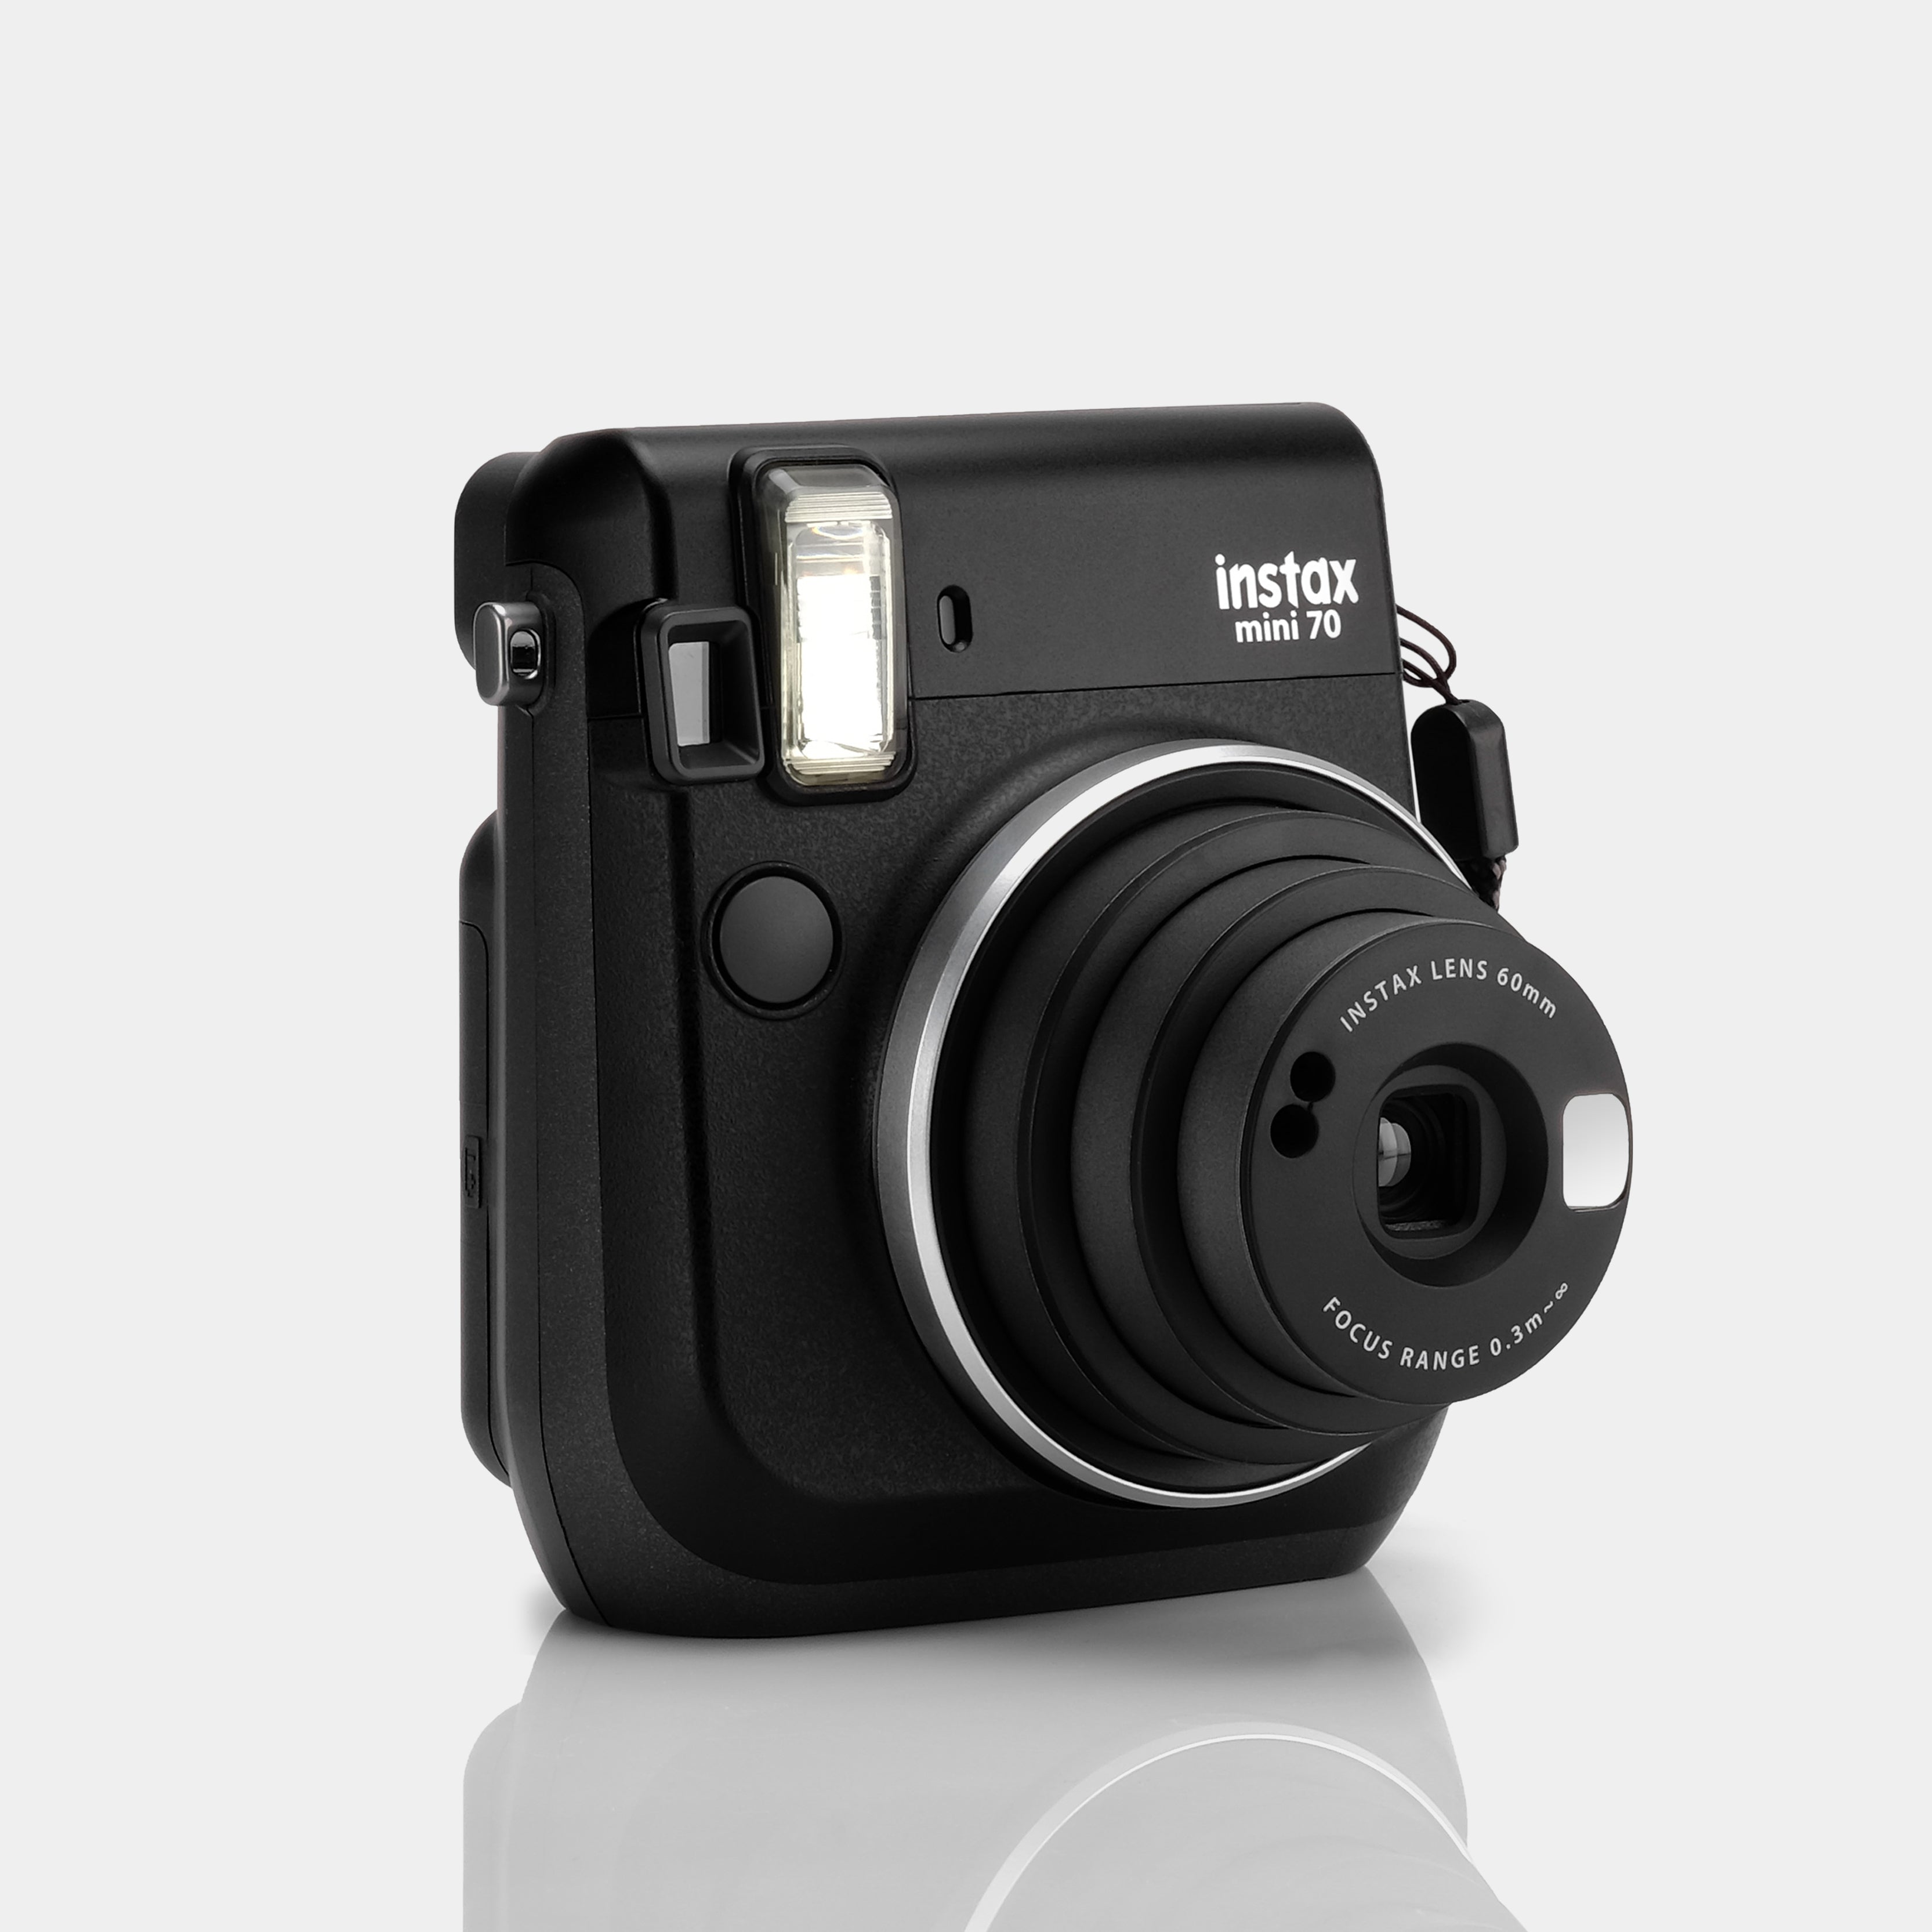 Fujifilm Instax Mini 70 Midnight Black Instant Film Camera